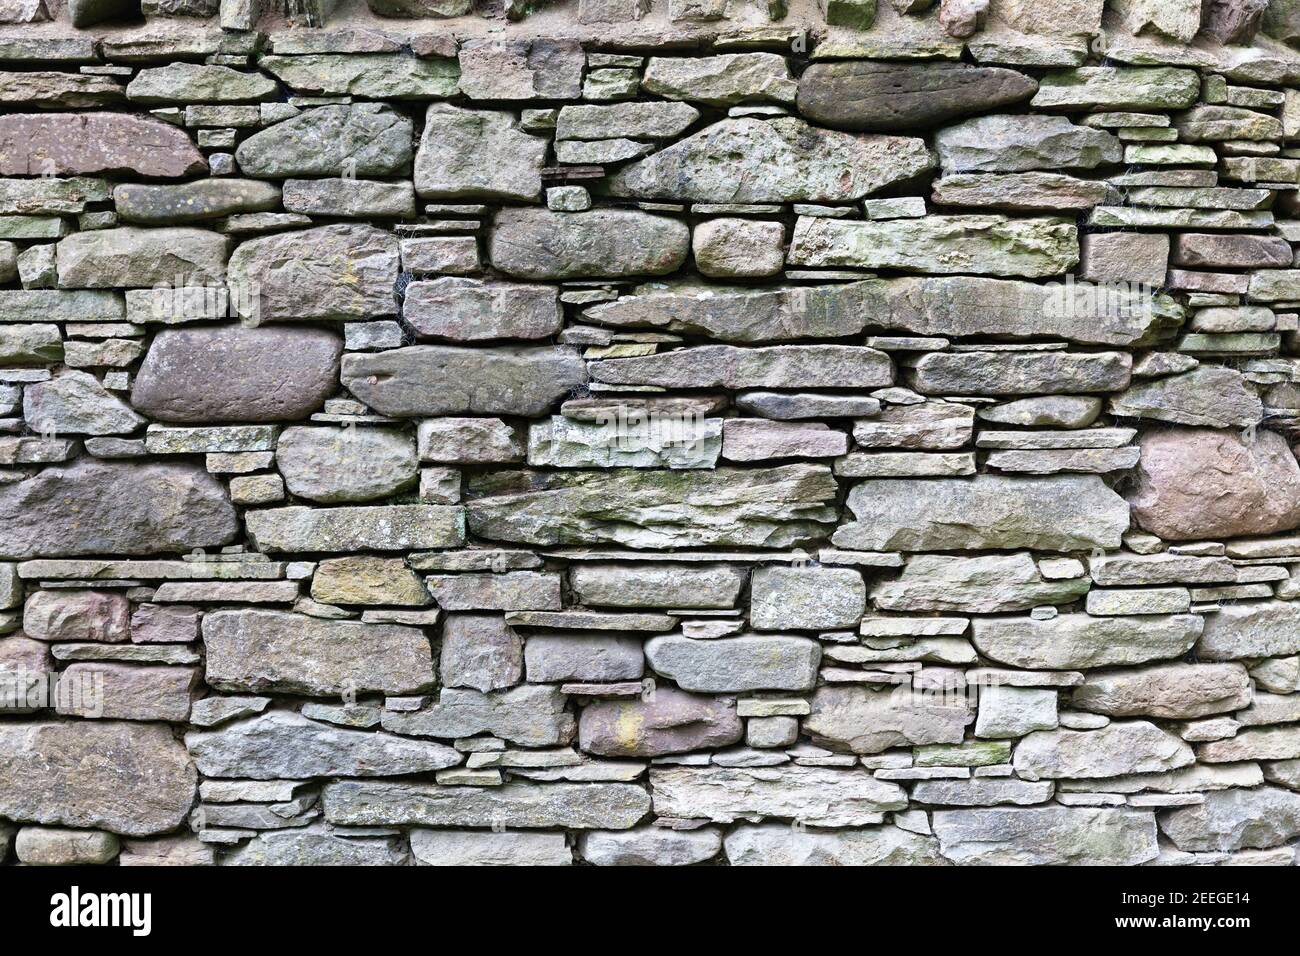 Les murs de pierre secs ou les murs de pierre de fond et la texture faite de ardoise naturelle ou pierre de forme régulière superposée maintenue en place sans mortier peut durer hun Banque D'Images